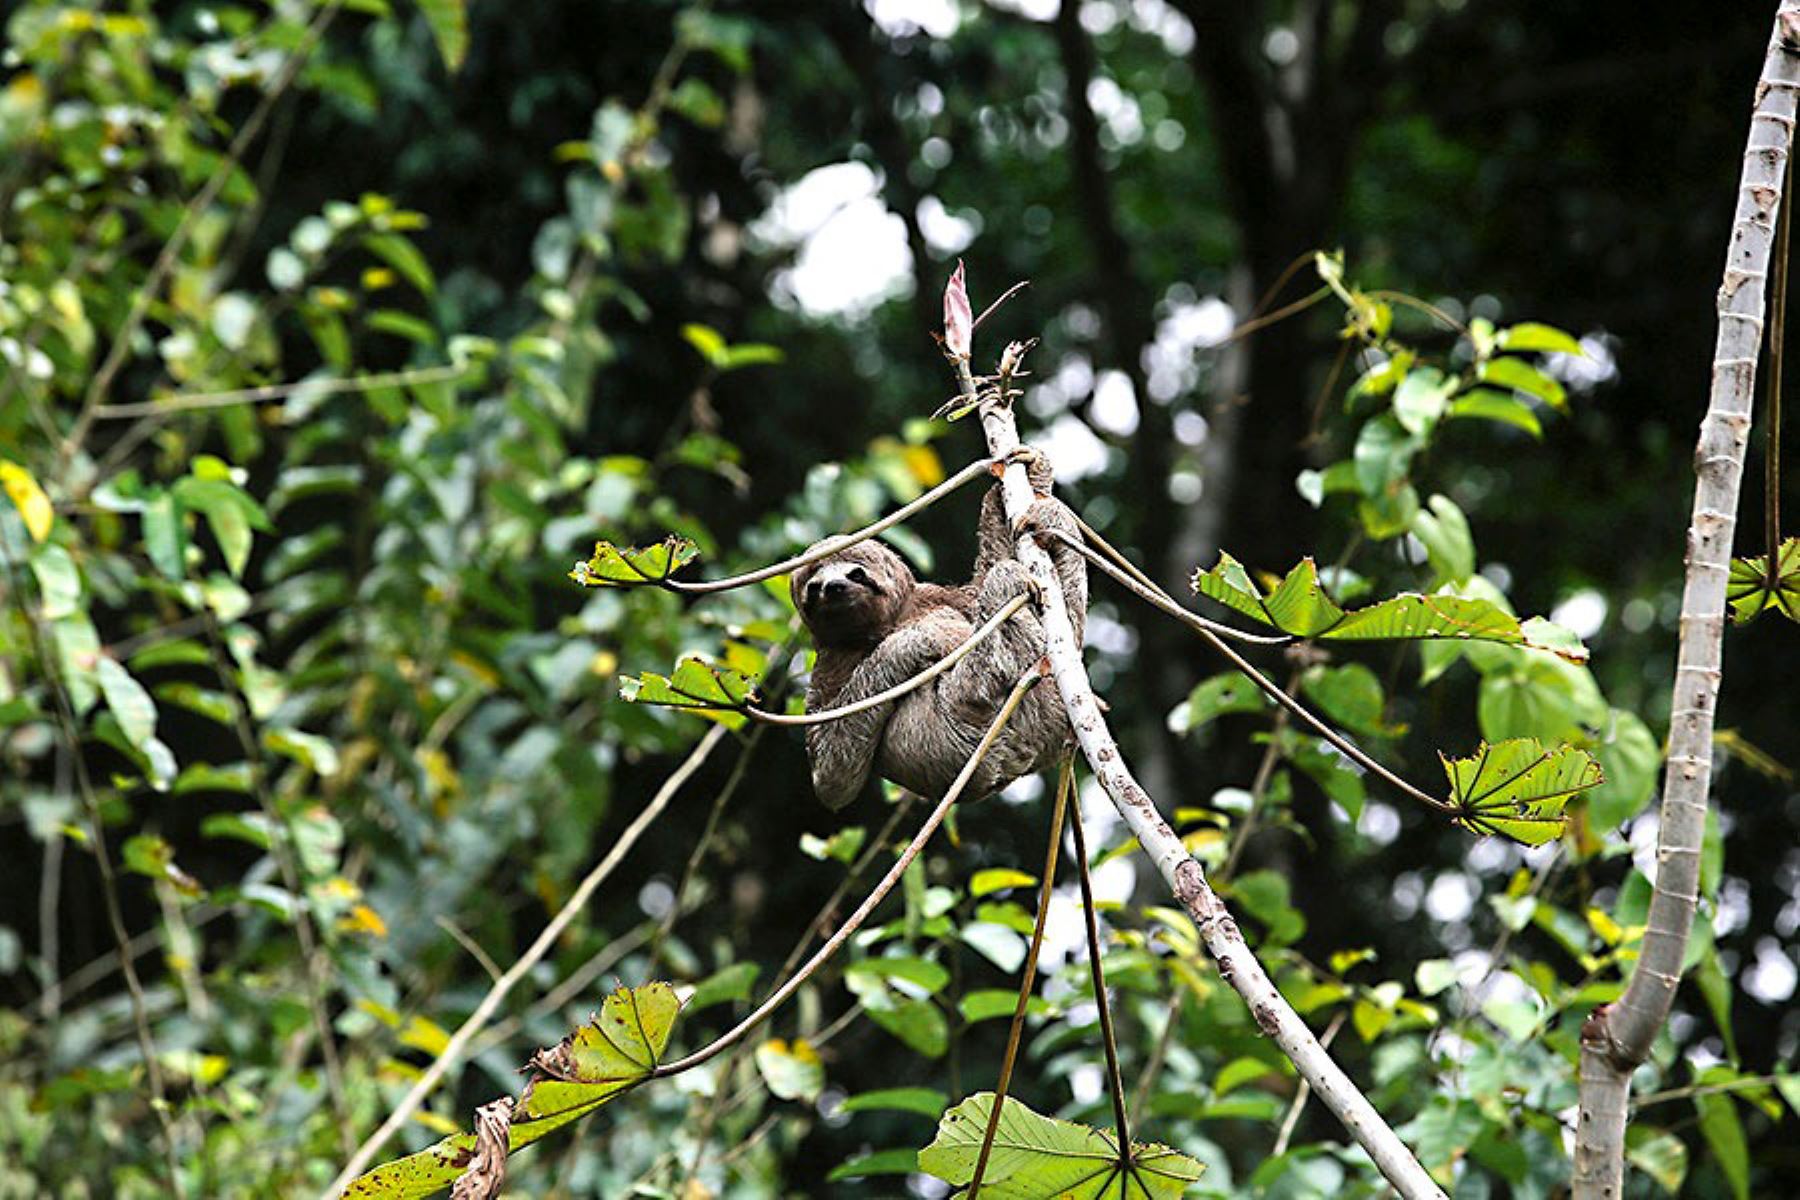 En el Pacaya Samiria, la segunda área protegida más grande del país, se ha reportado la presencia de más 1,000 especies de vertebrados, lo que representa un 27% de la diversidad de estas especies en el Perú y el 36% del total registrado en la Amazonía. Foto: ANDINA/ Daniel Bracamonte